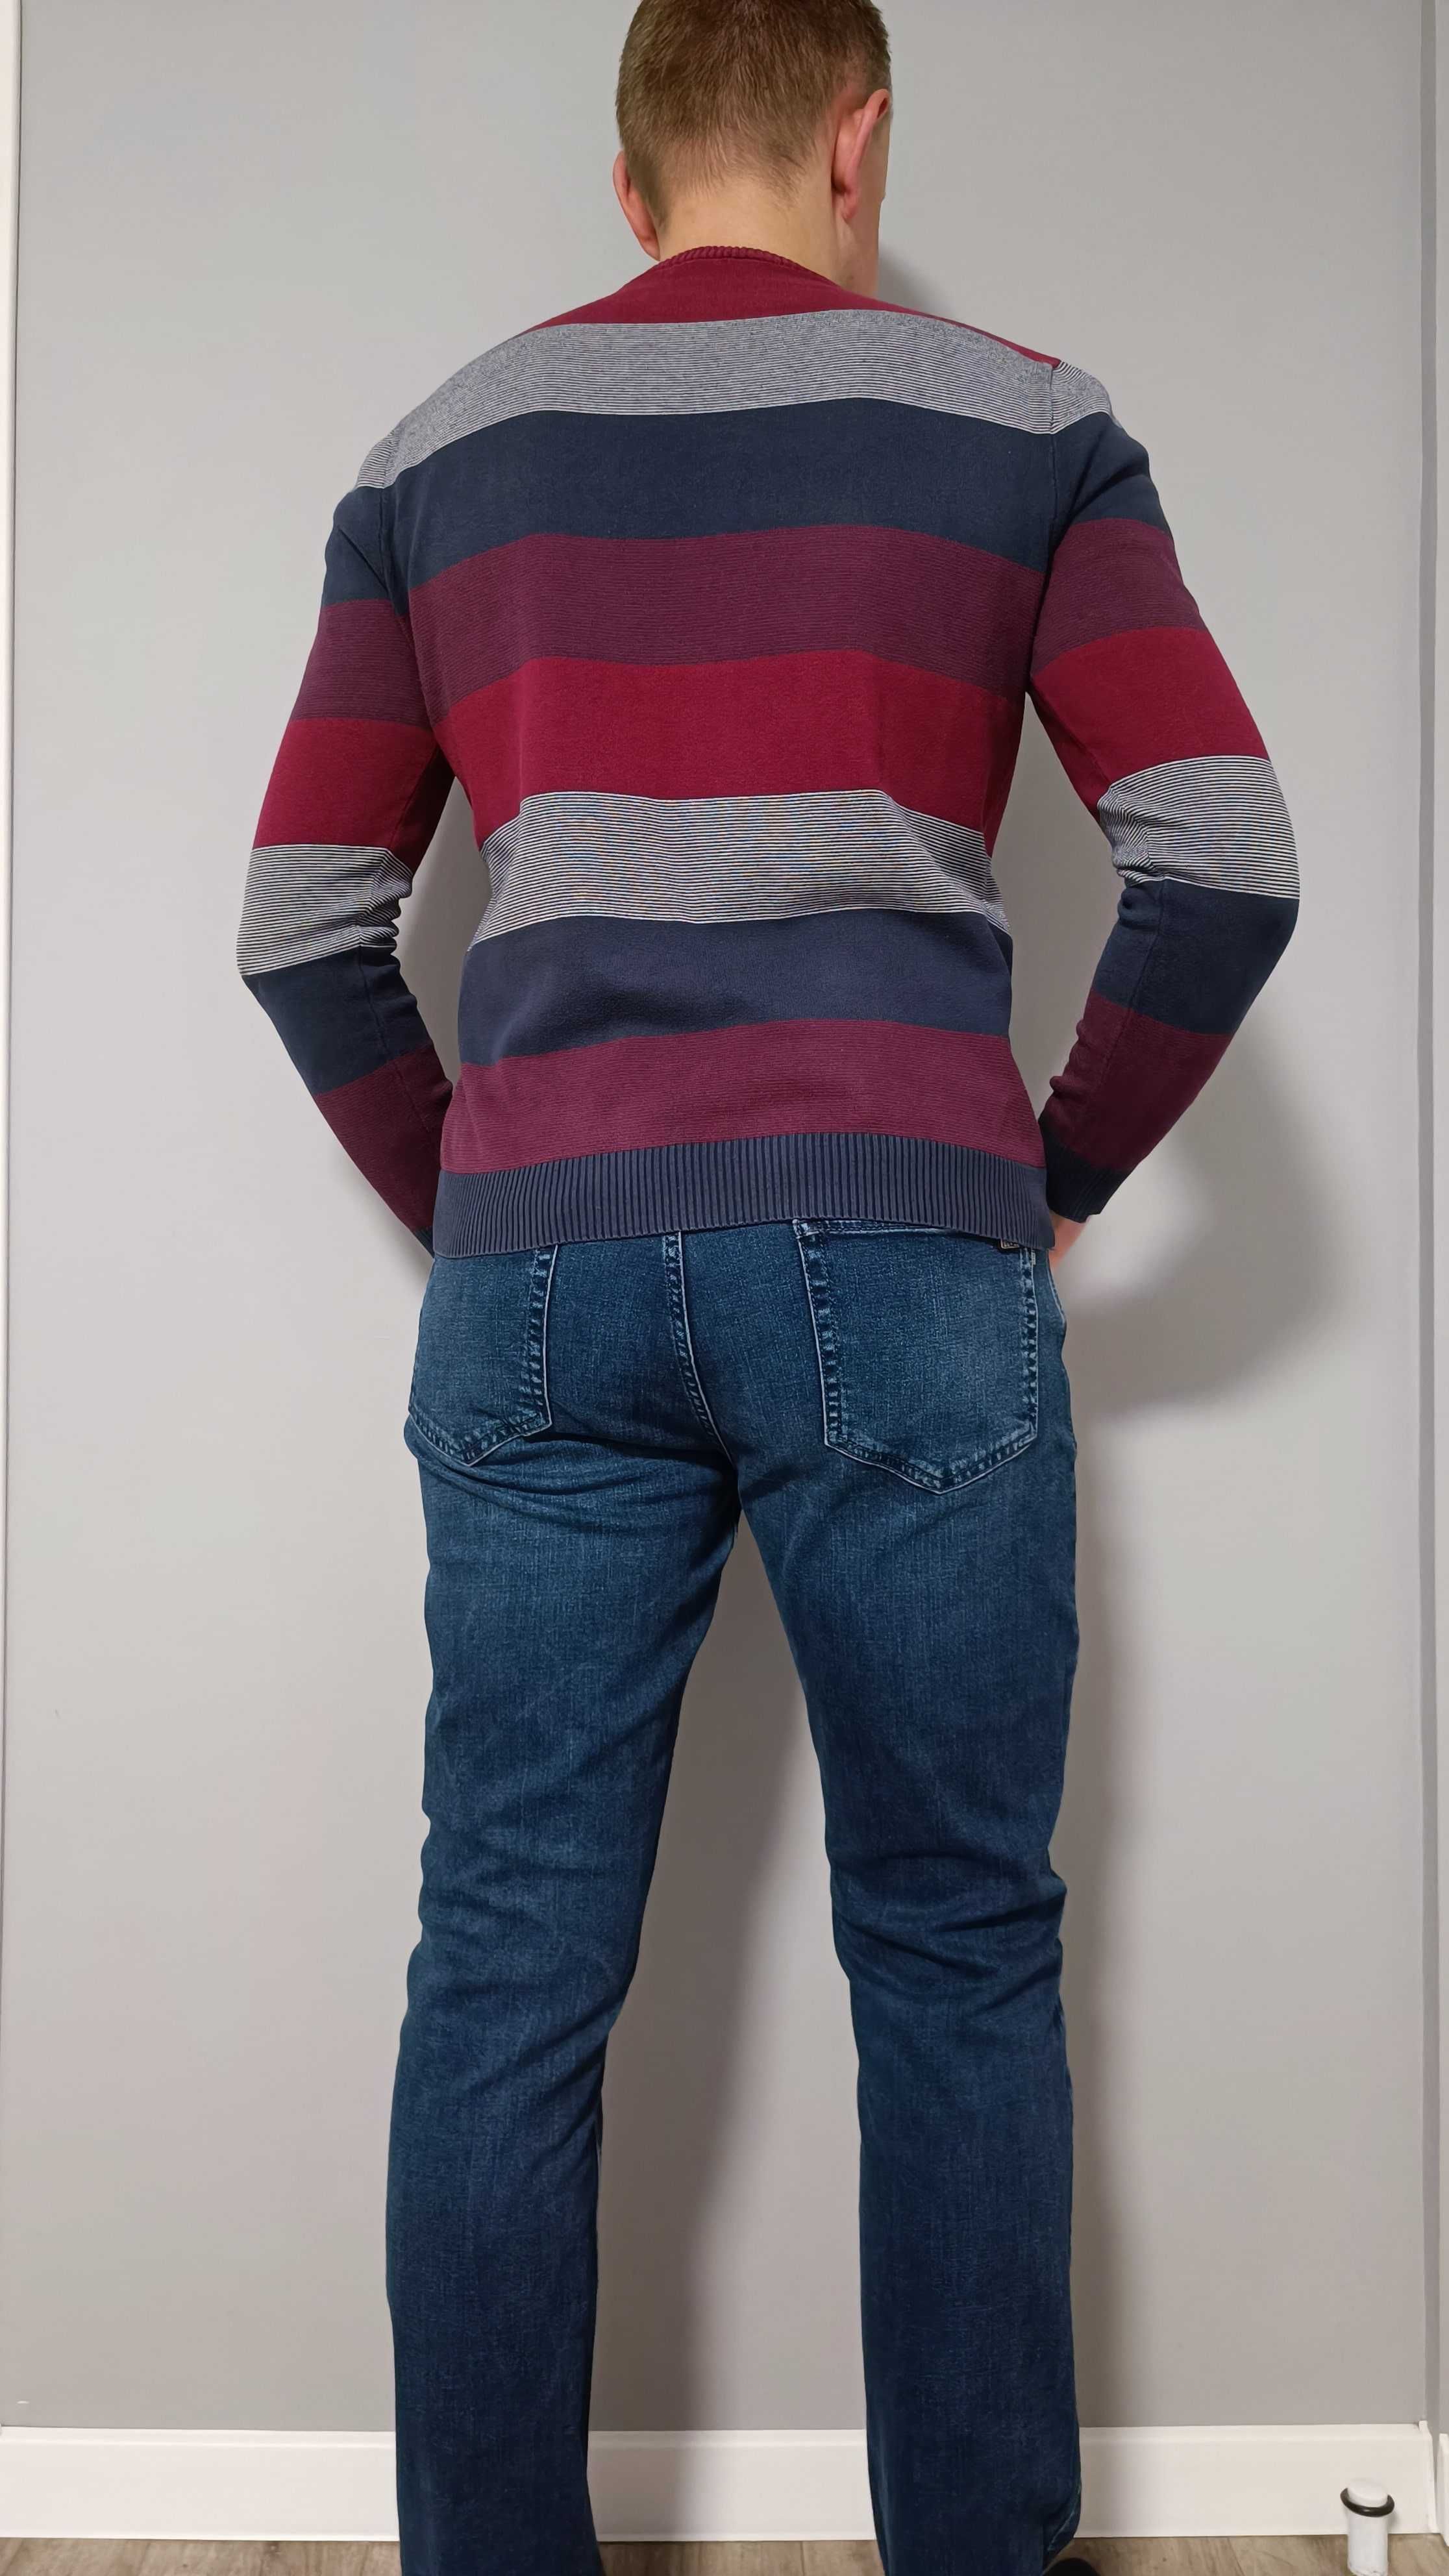 Стильный мужской свитер L разноцветный кофта джемпер батник LC Waikiki